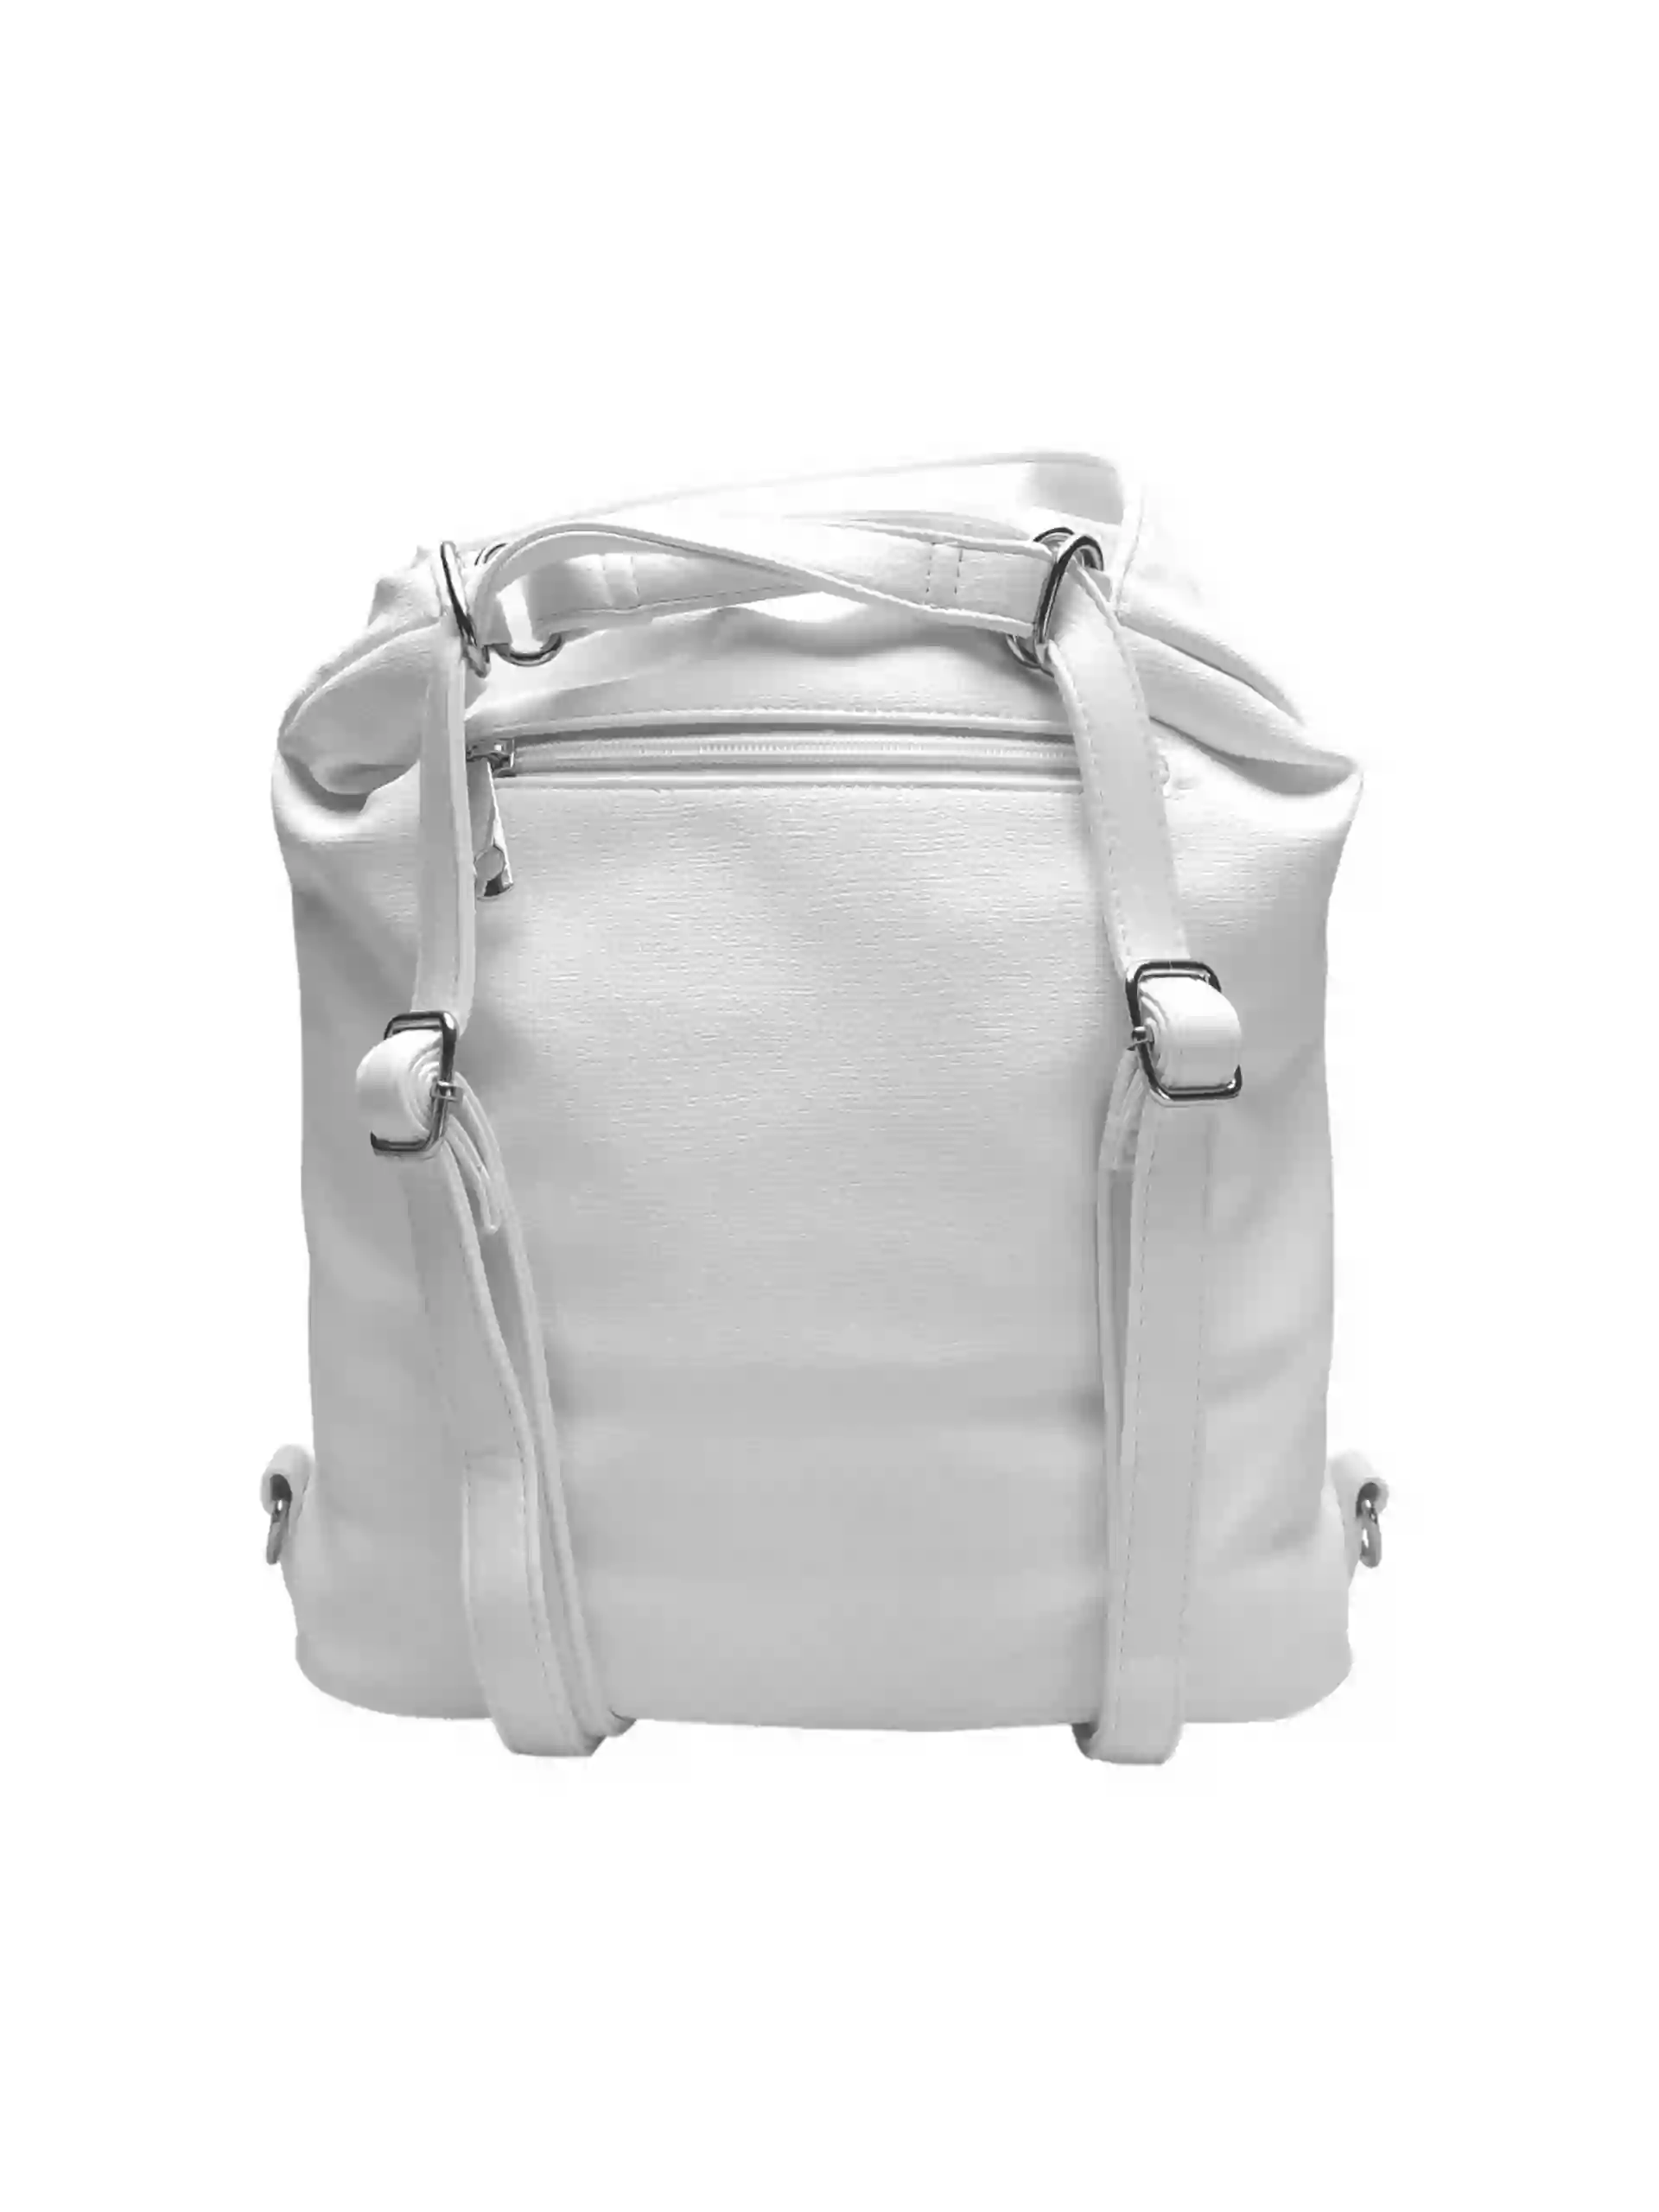 Střední bílý kabelko-batoh 2v1 s praktickou kapsou, Tapple, H190062, zadní strana kabelko-batohu s popruhy